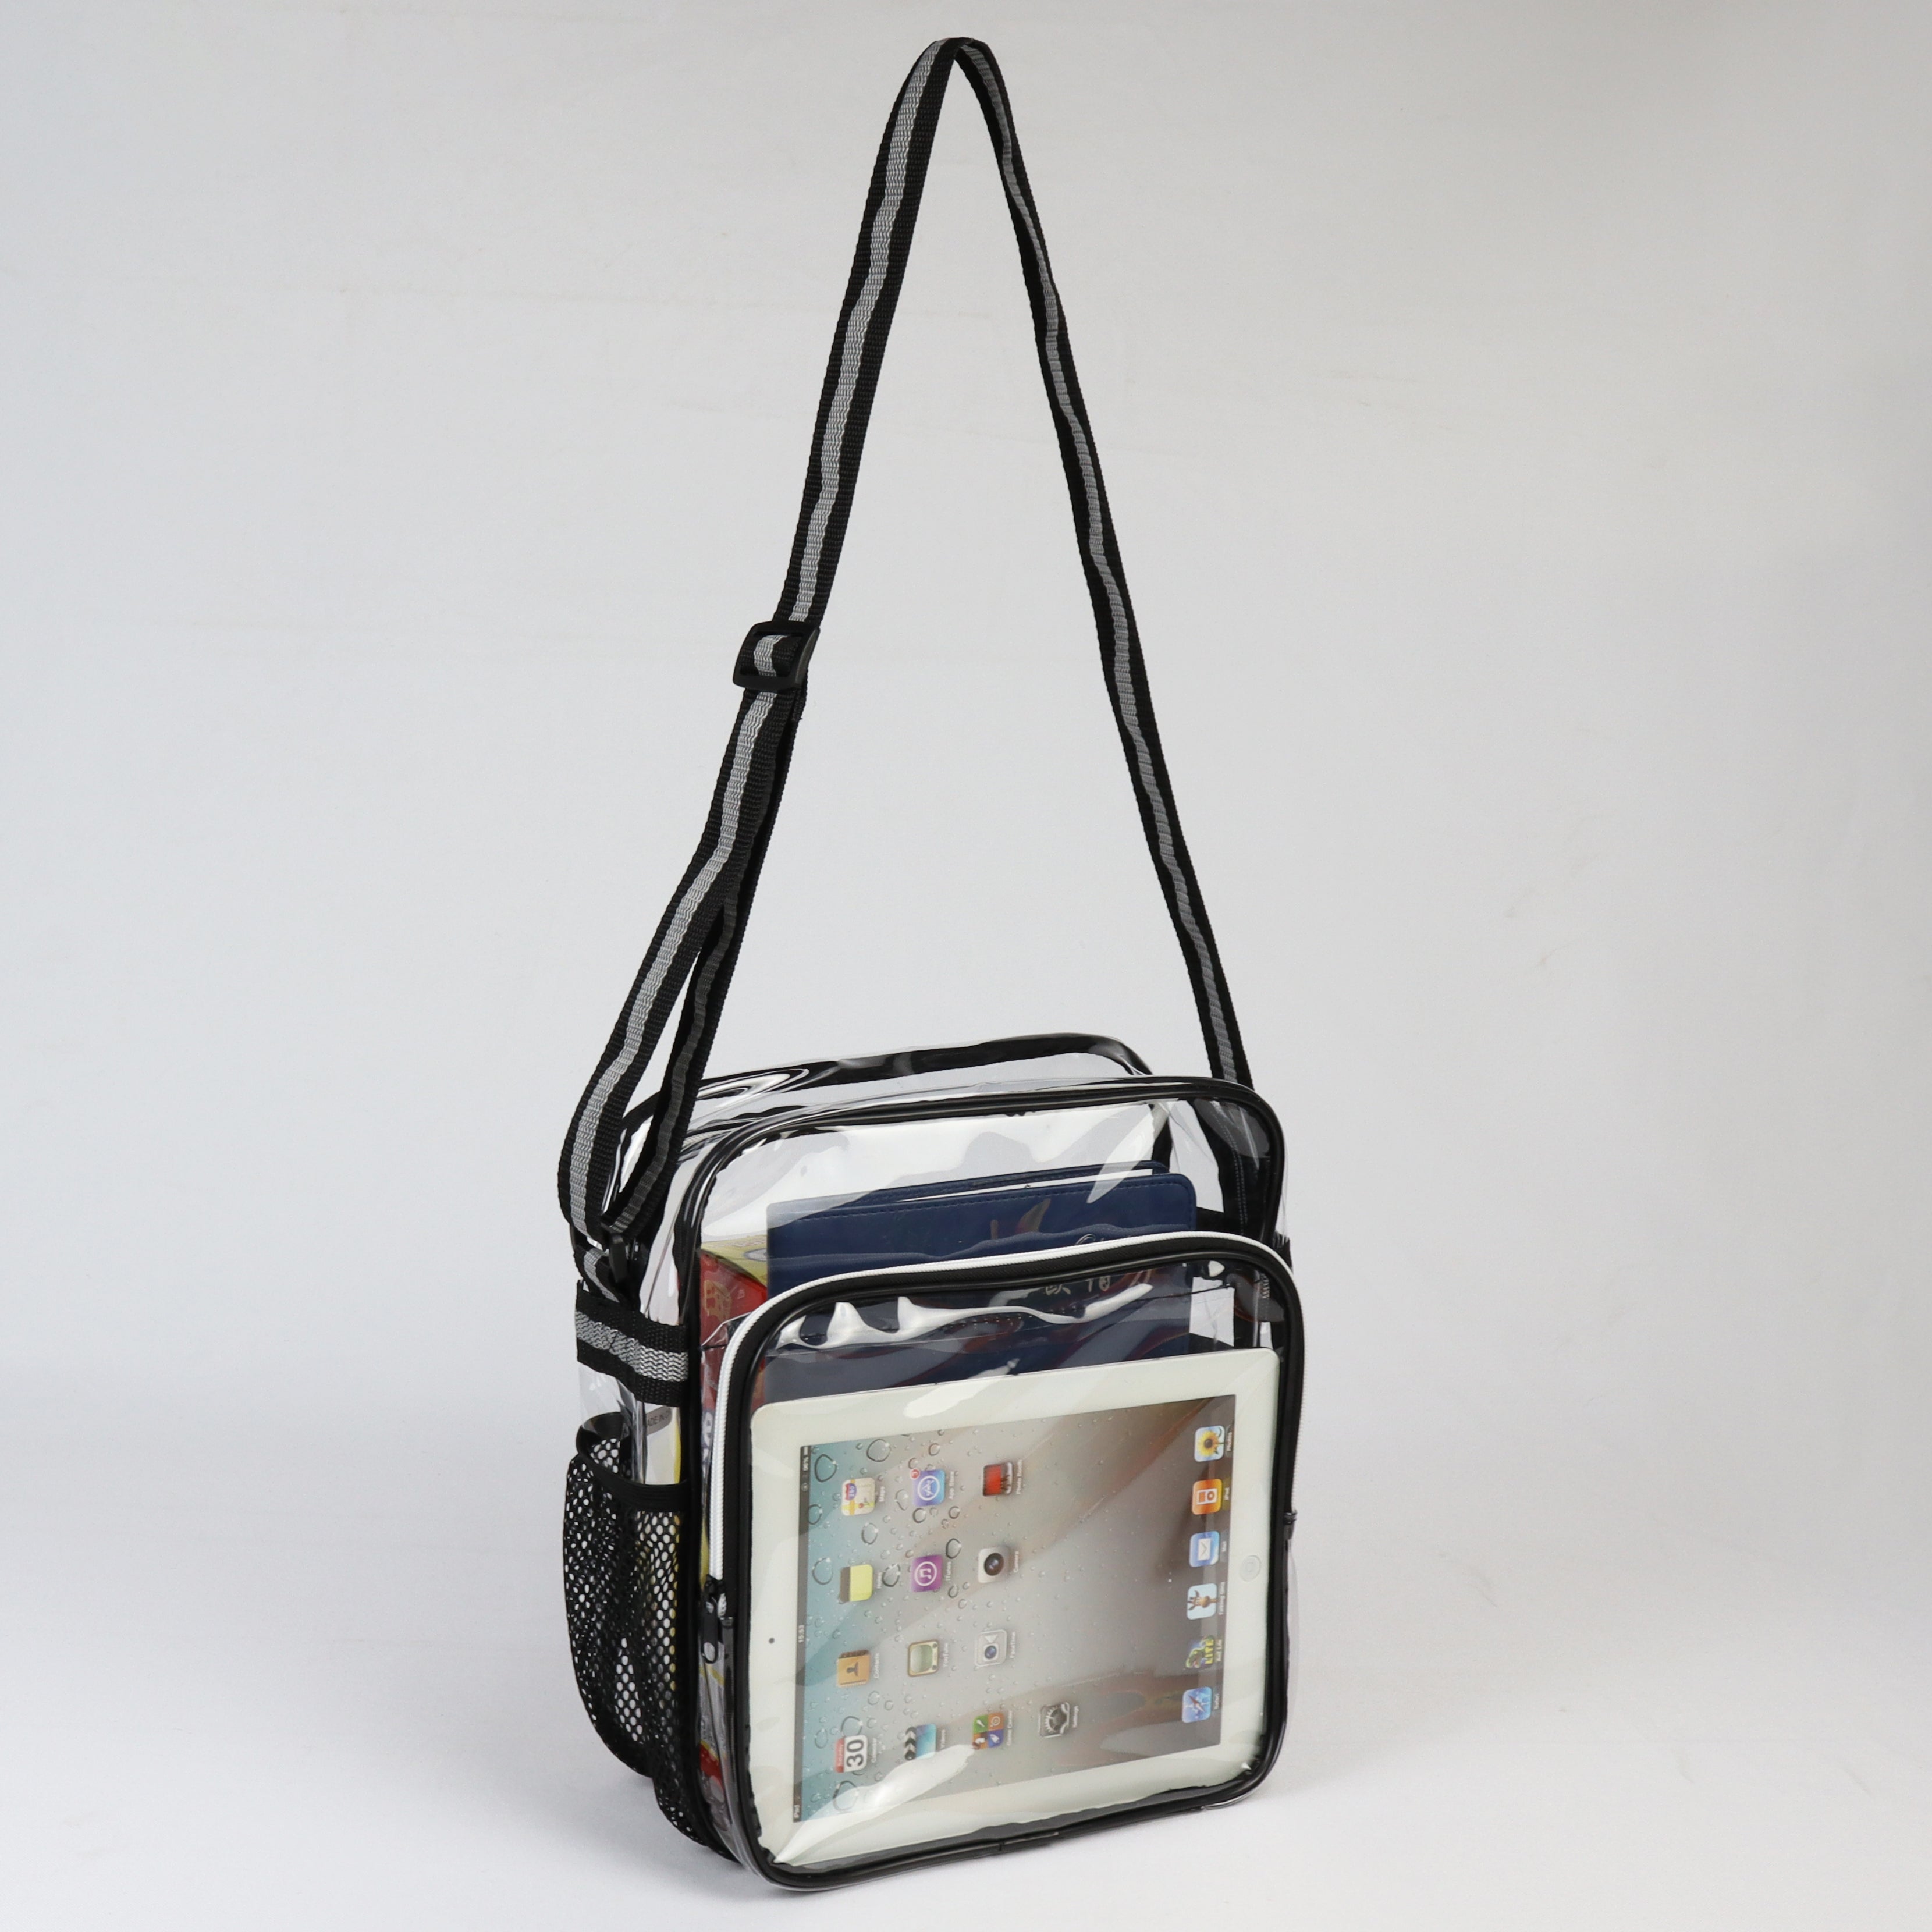 LS-TPU607 - Medium Clear Backpack